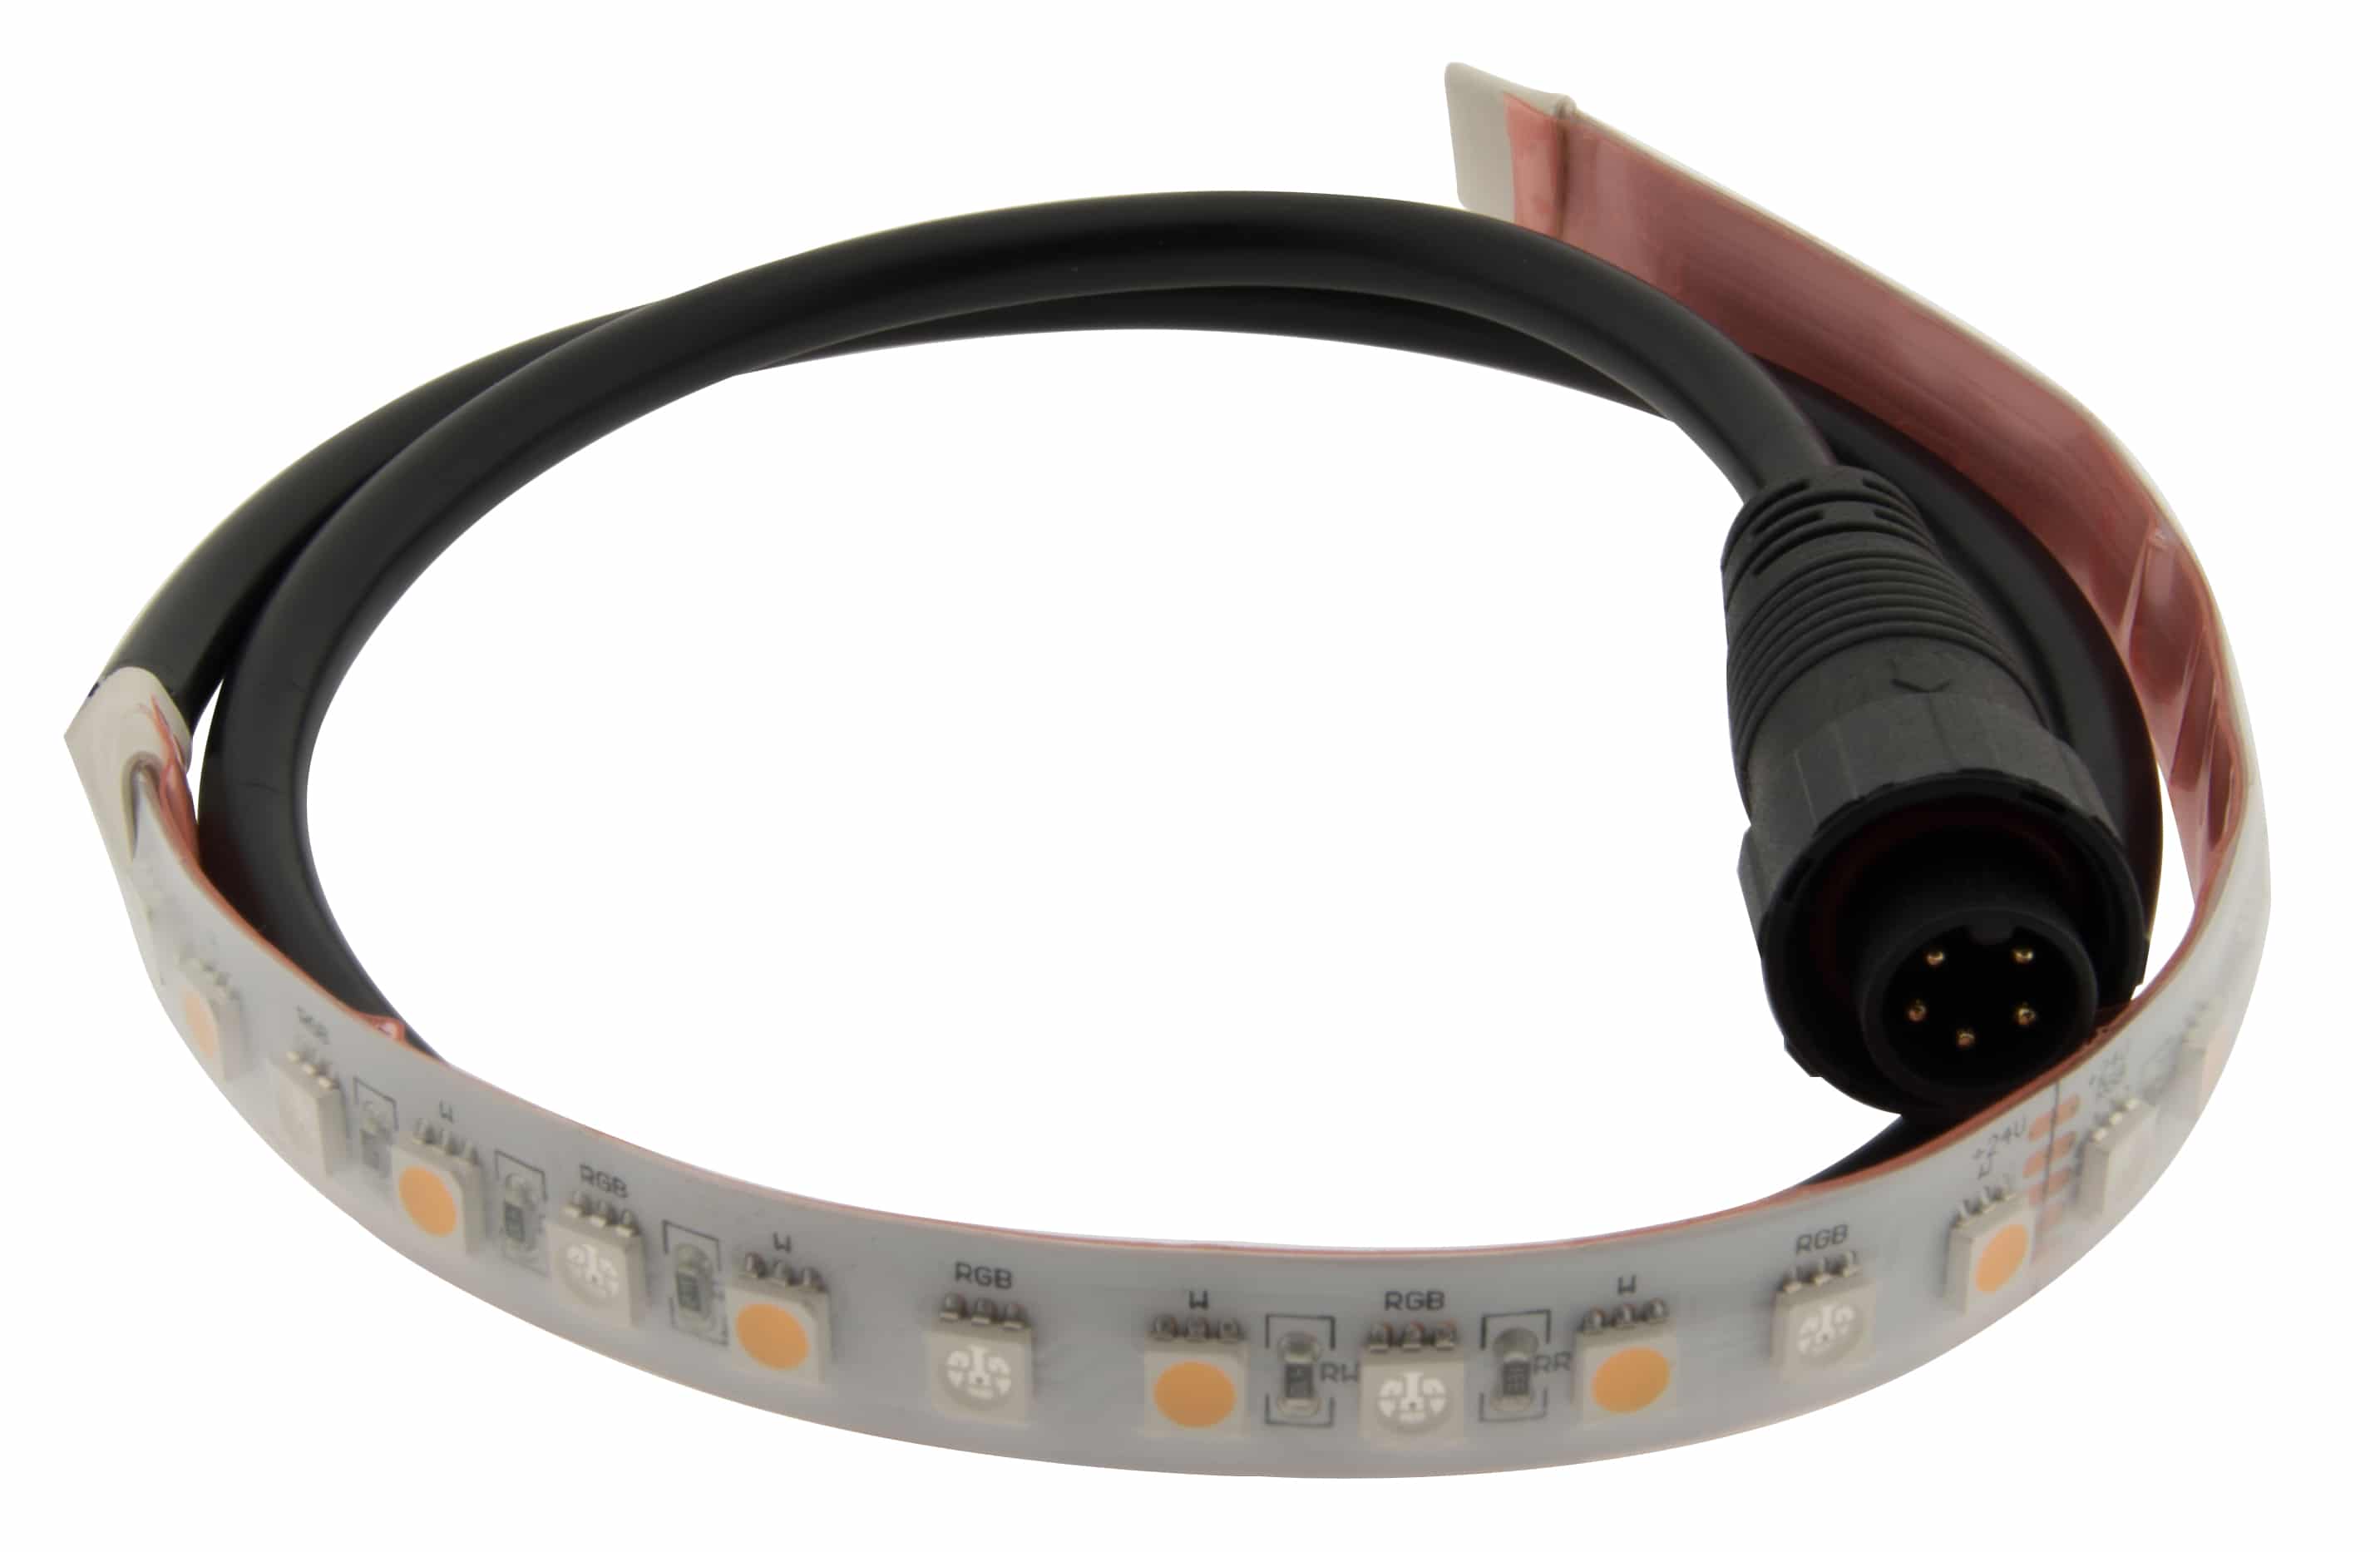 https://autled.com/daten/foto/Produktfoto_LED-Musterset-Tasche-LED-Flexstrips-Profile-4Kanal-LED-Controller_1_v1.jpg